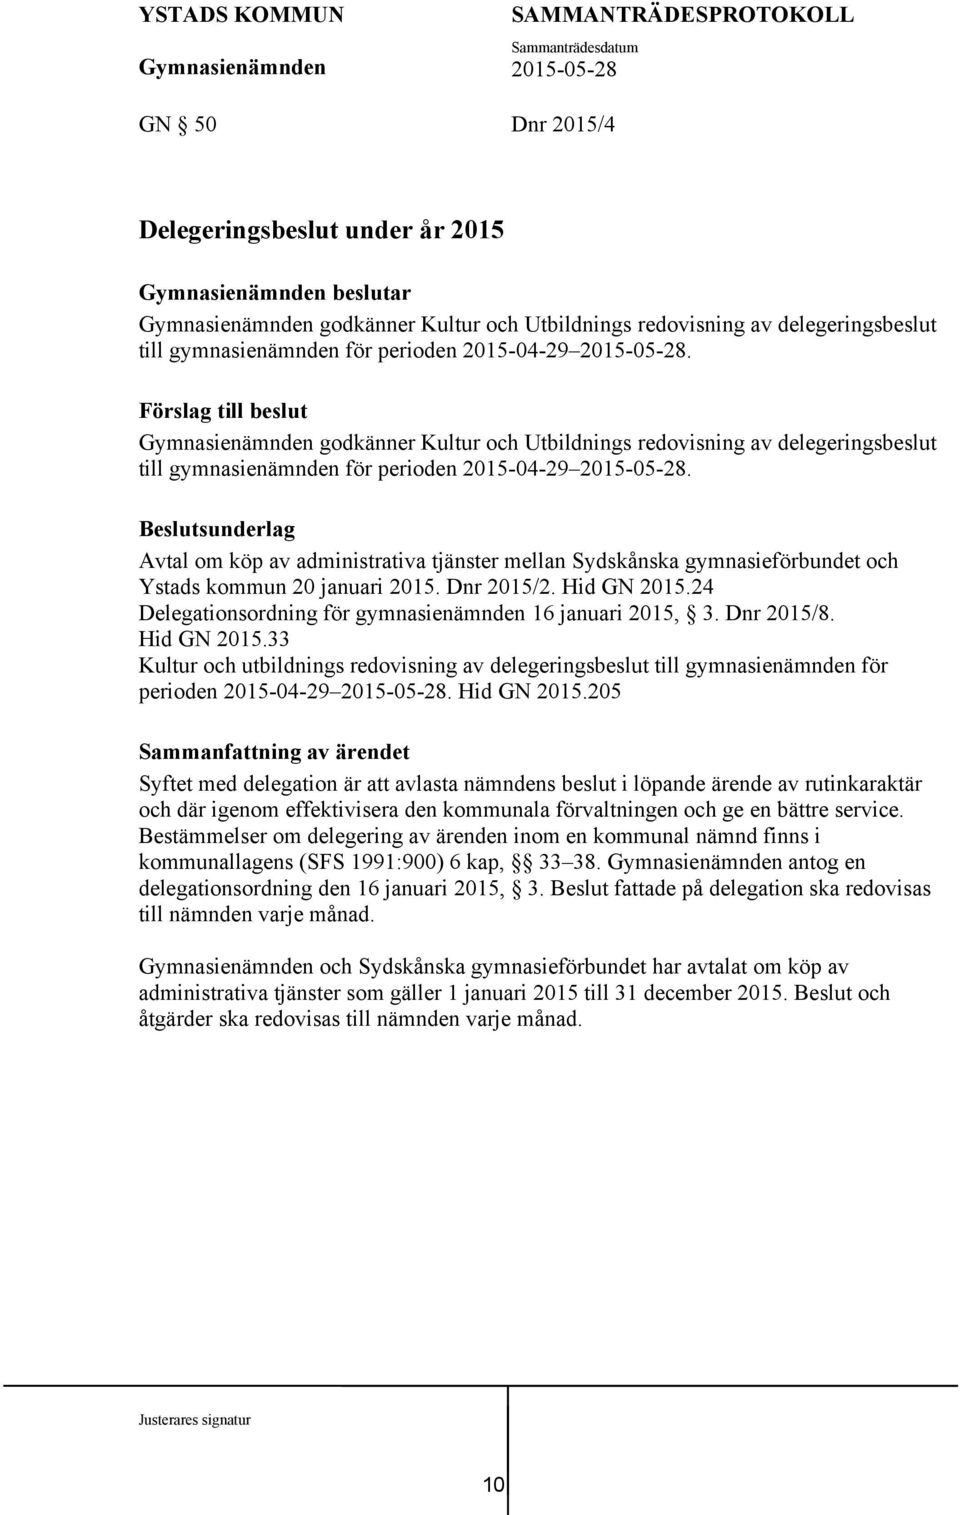 Beslutsunderlag Avtal om köp av administrativa tjänster mellan Sydskånska gymnasieförbundet och Ystads kommun 20 januari 2015. Dnr 2015/2. Hid GN 2015.